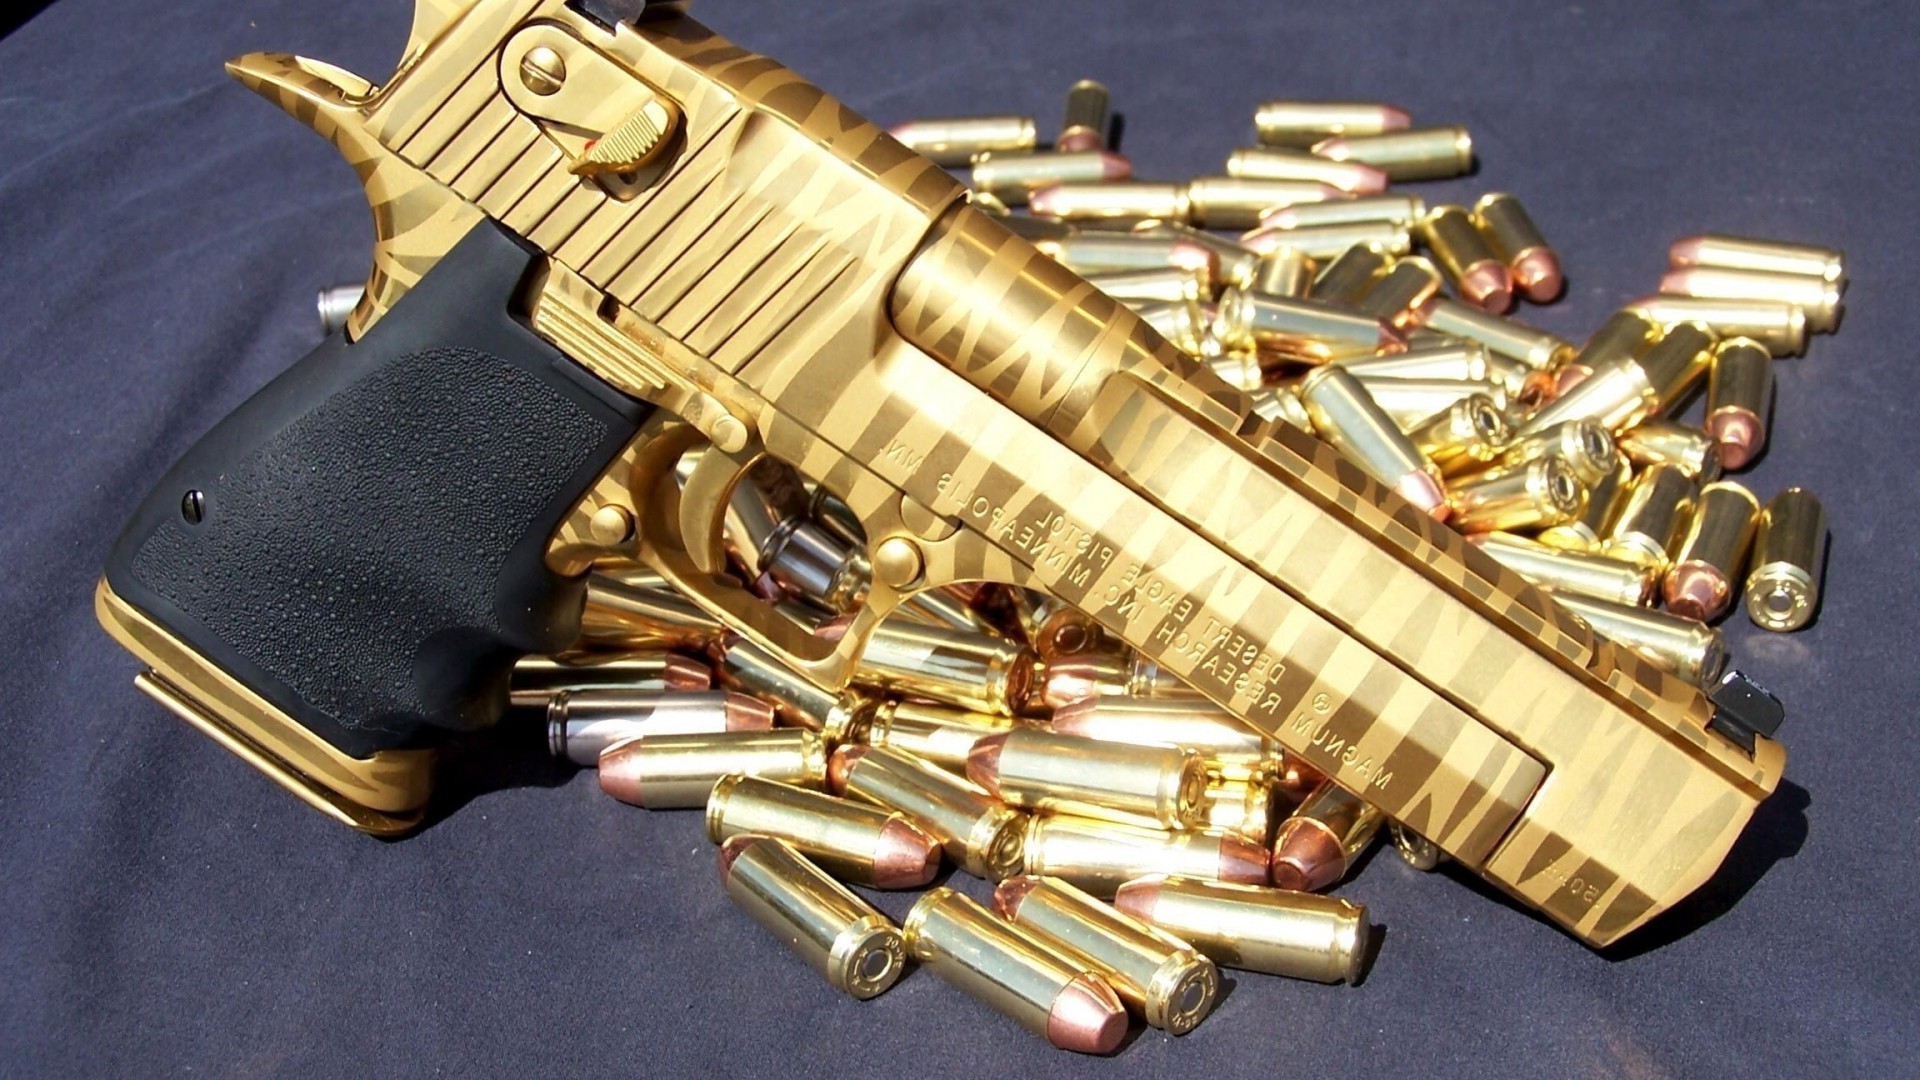 огнестрельное оружие пистолет оружие пистолет преступление латунь боеприпасы пуля безопасности винтовка медь датчик картридж золото закон армия войны силу полиция